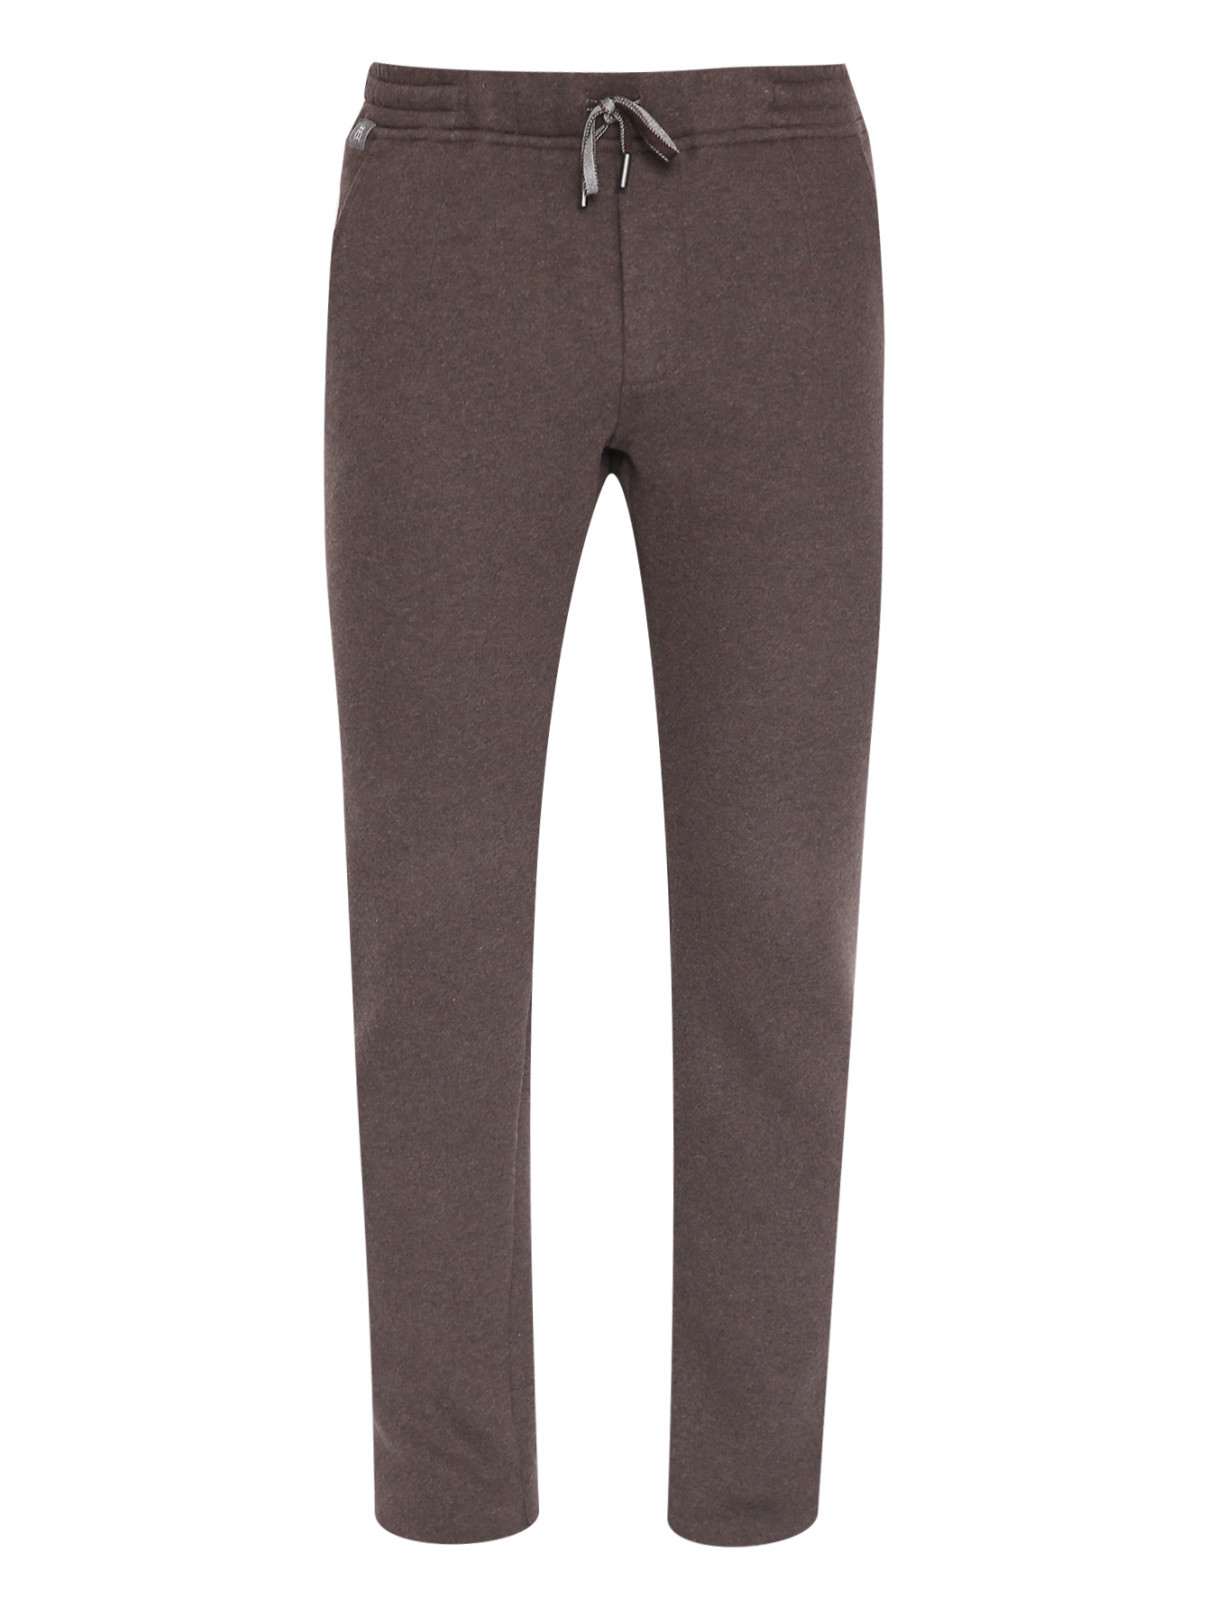 Трикотажные брюки на резинке с карманами Capobianco  –  Общий вид  – Цвет:  Коричневый